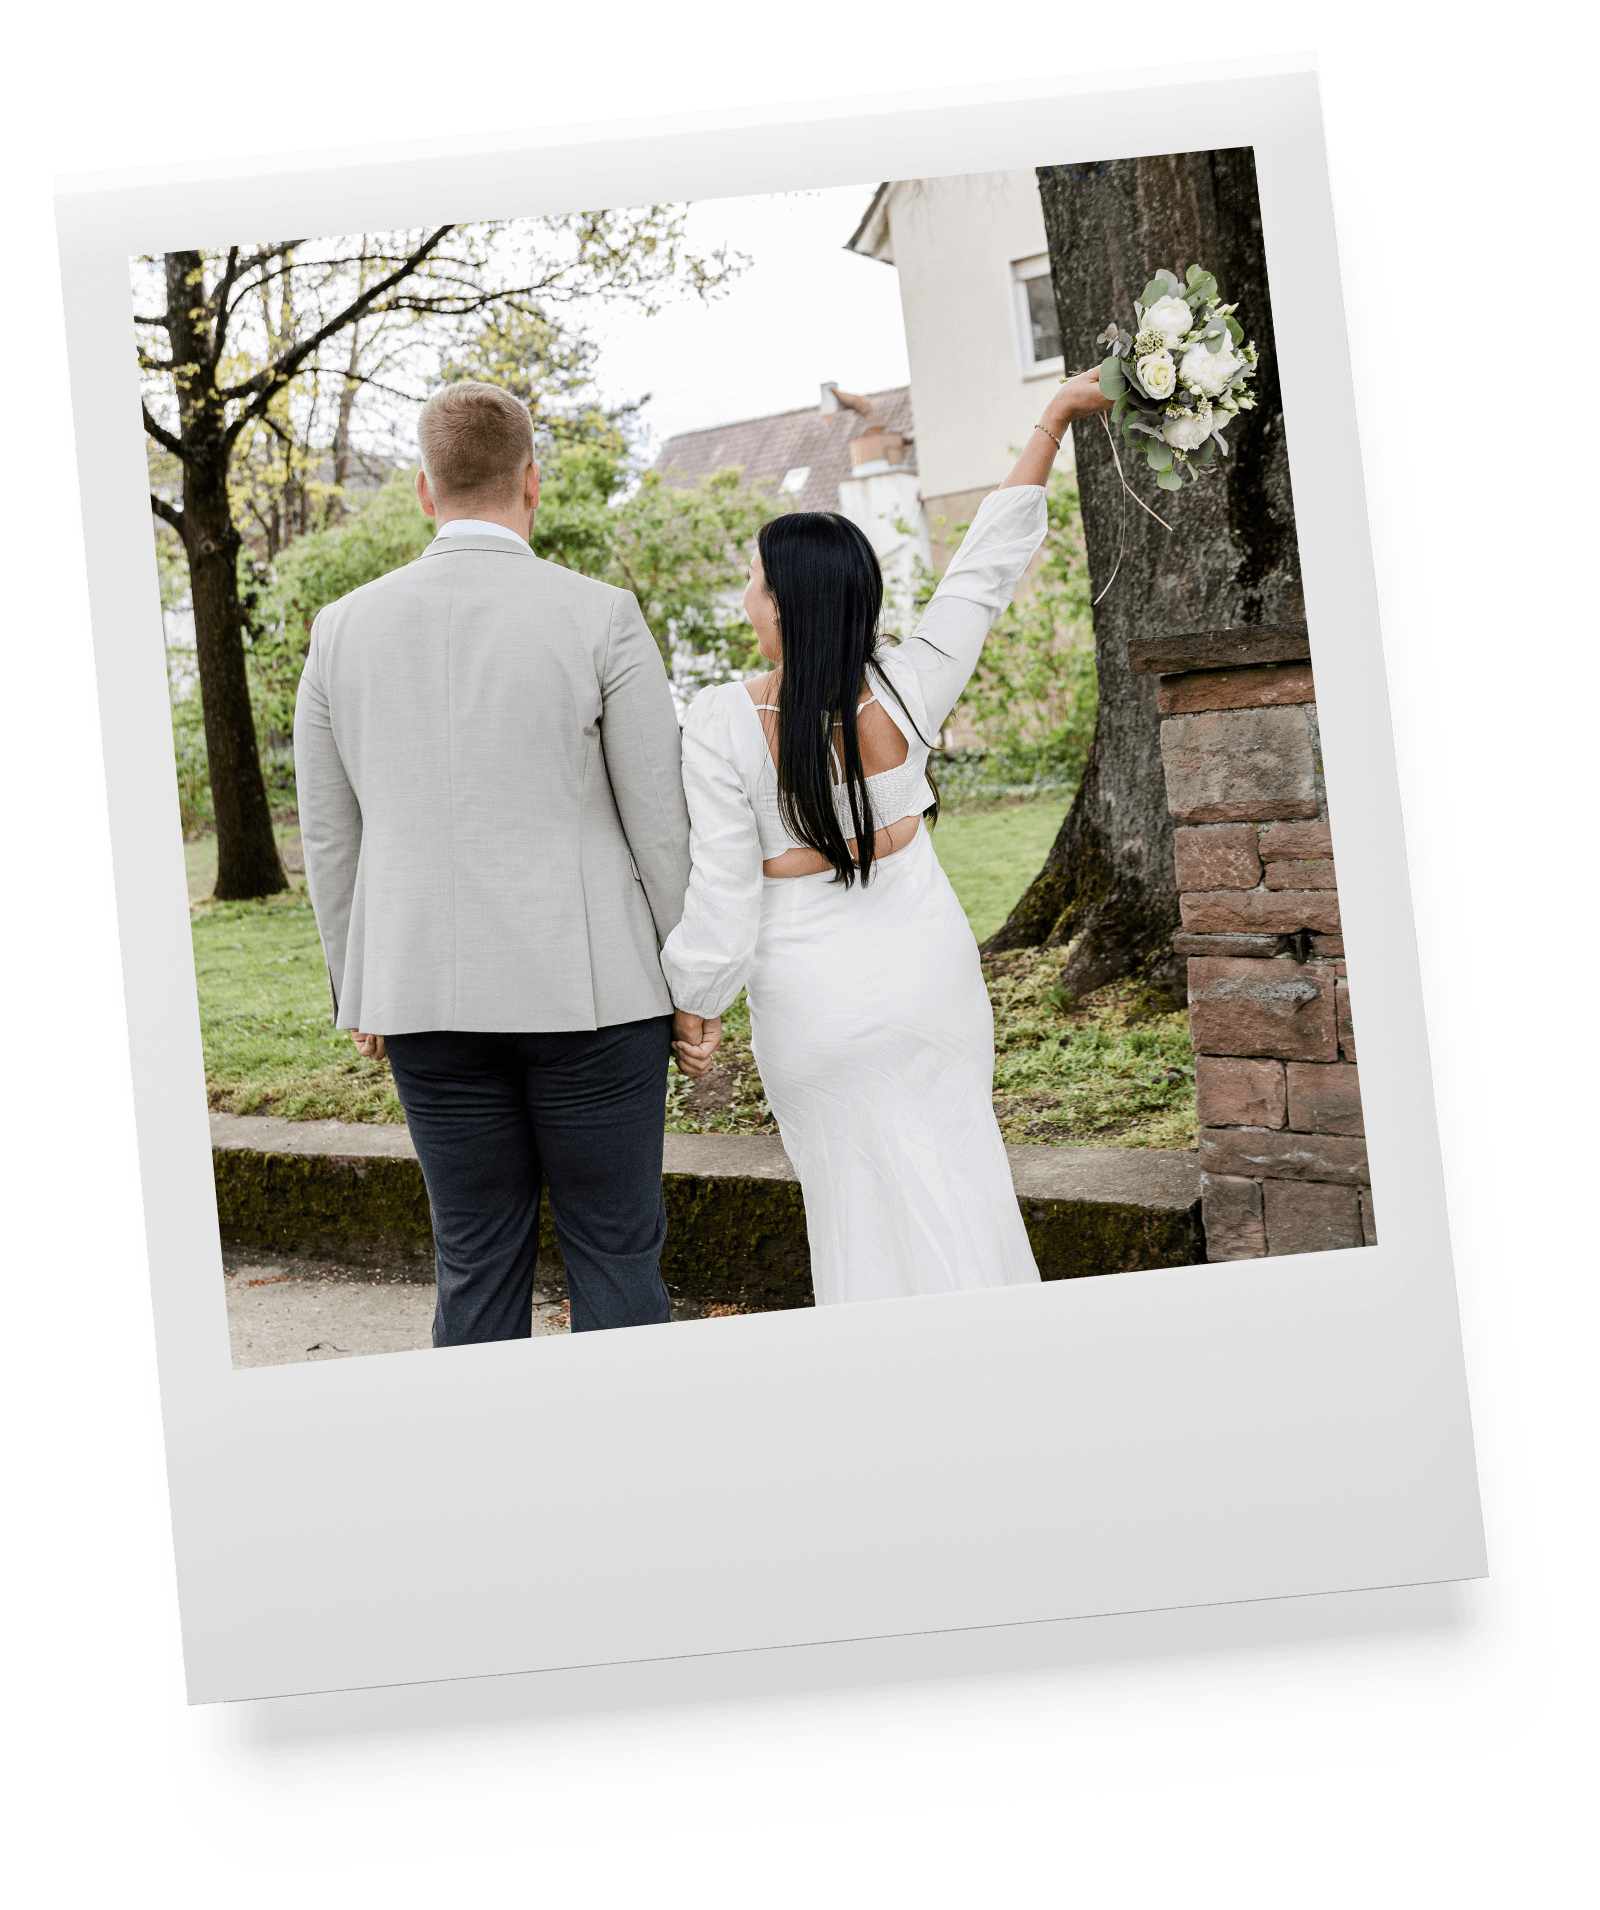 Brautpaar feiert Hochzeitstag, von hinten fotografiert in Leinfelden